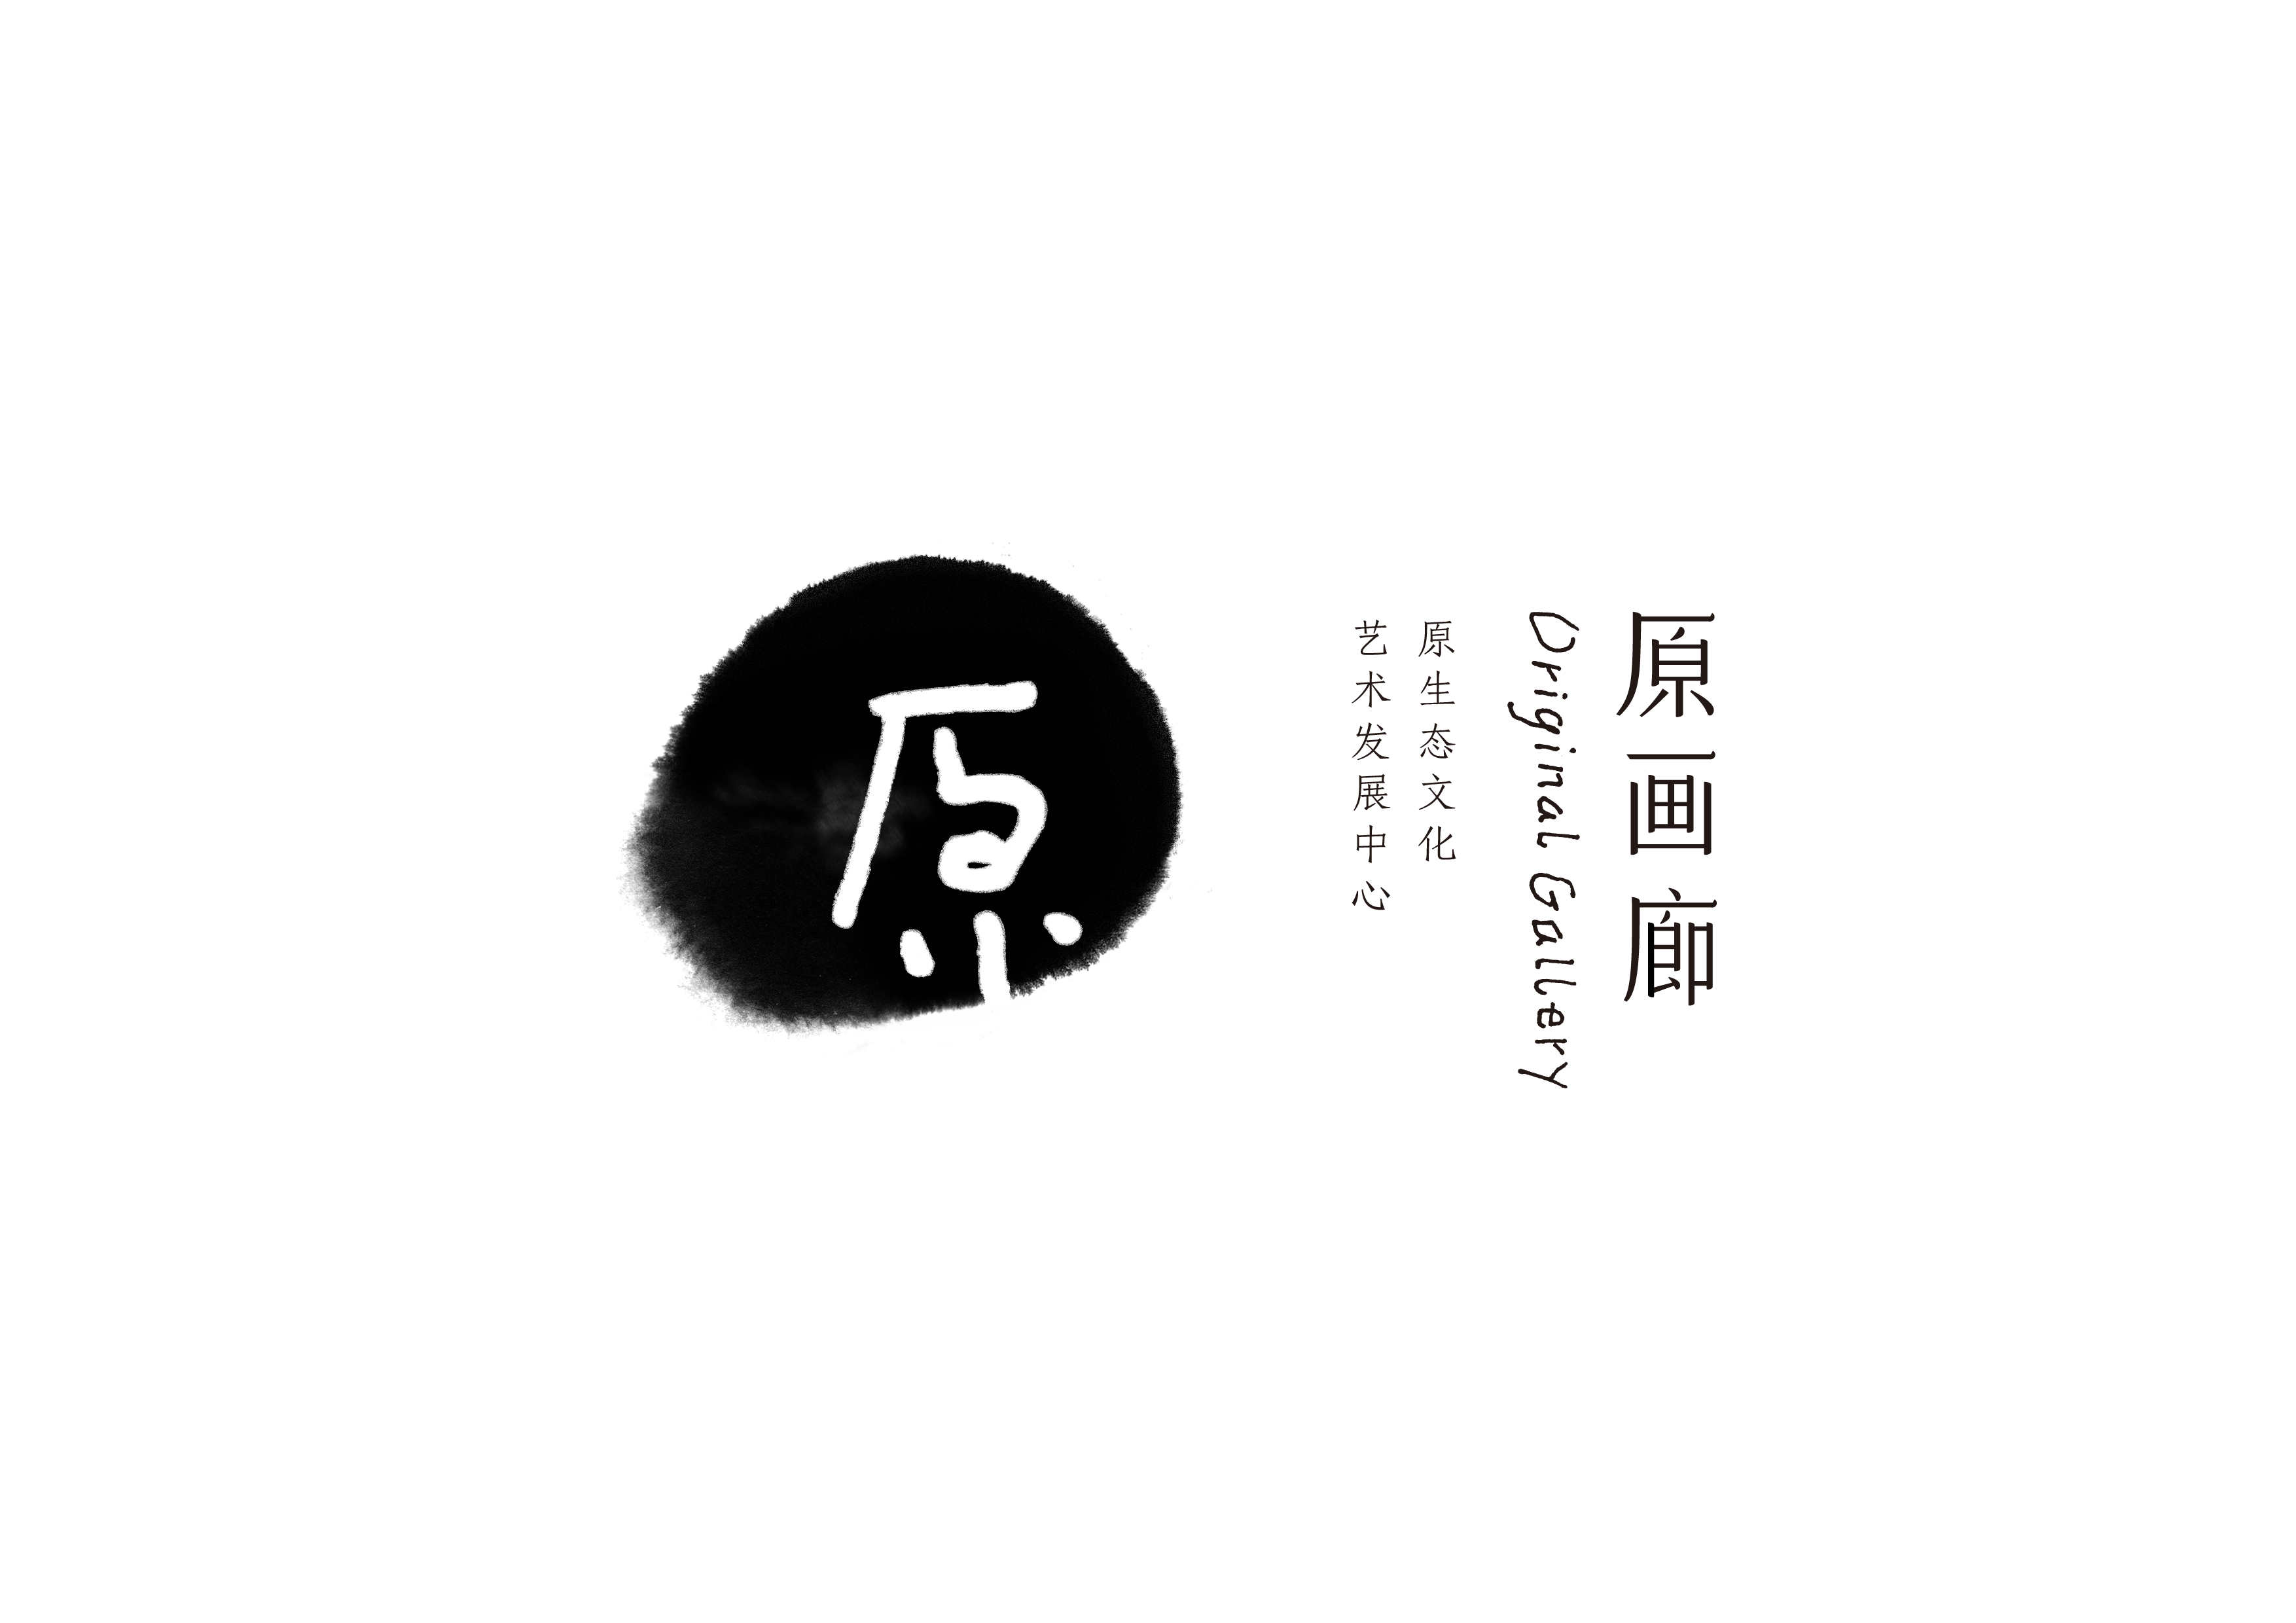 画廊品牌视觉形象 客户    贵州原生态文化艺术发展中心 服务    标志